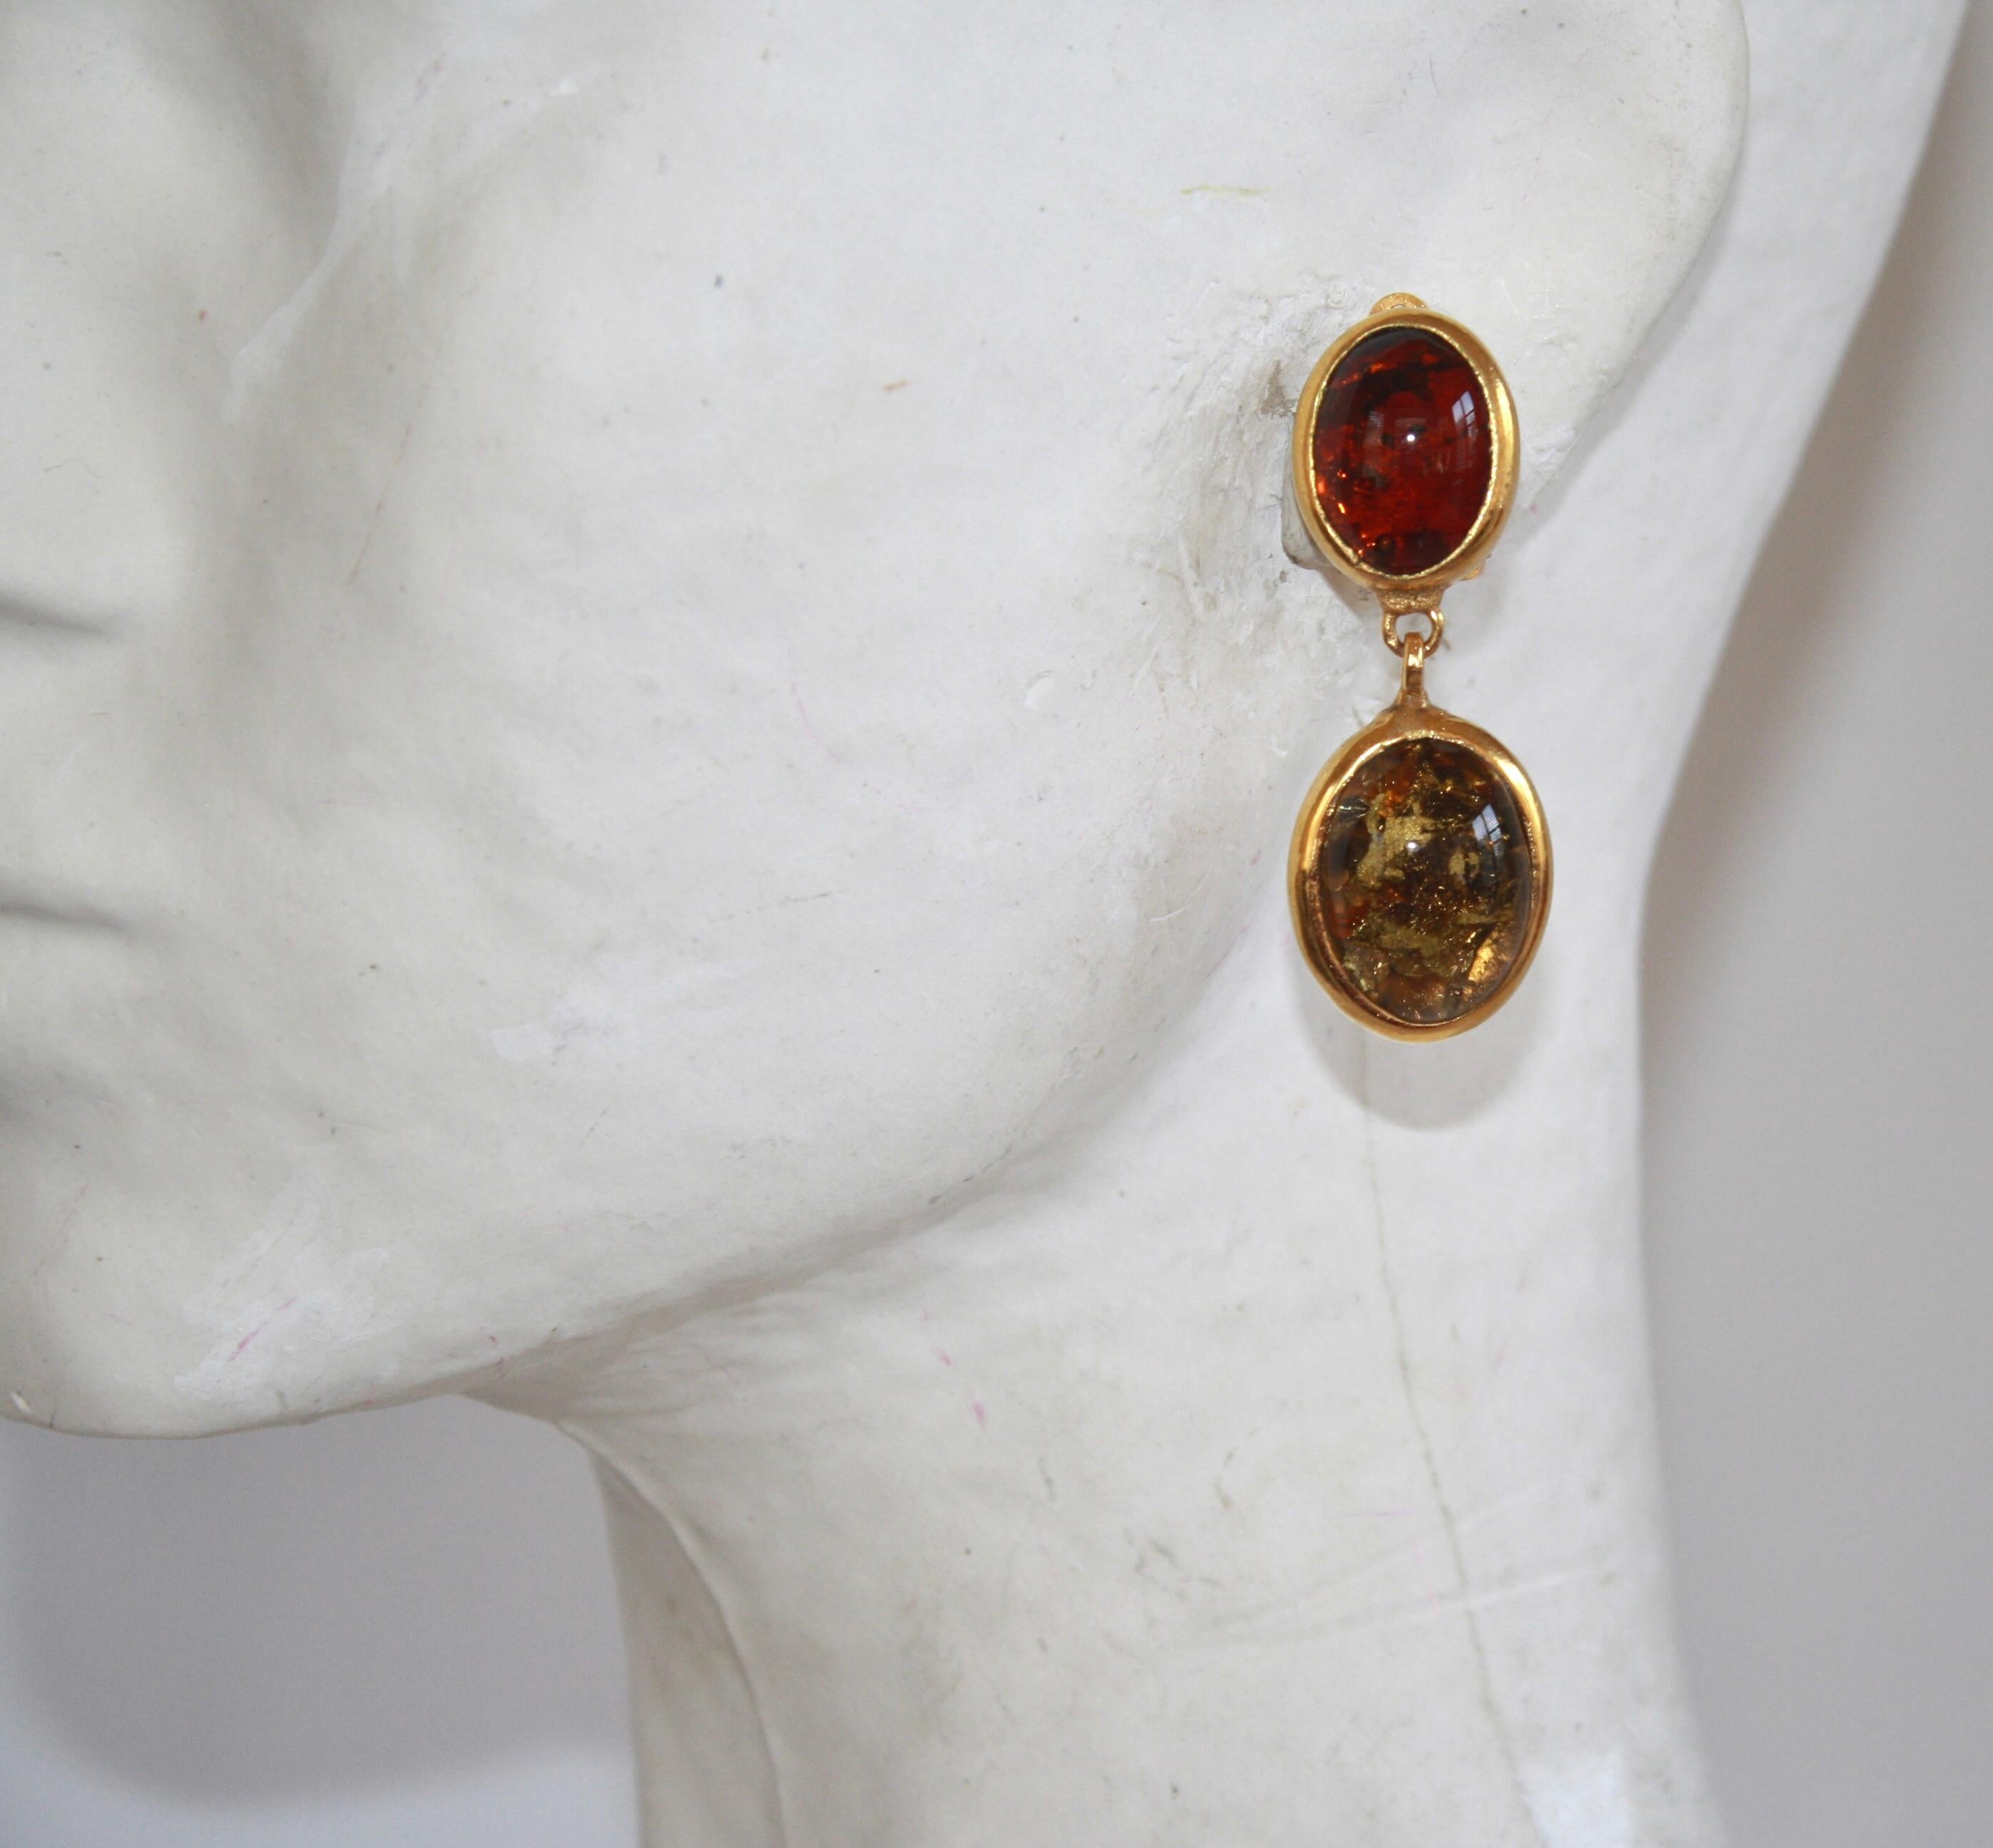 Handgefertigte Ohrringe aus Pate de Verre-Glas mit Blattgoldtupfen auf vergoldetem Messing.